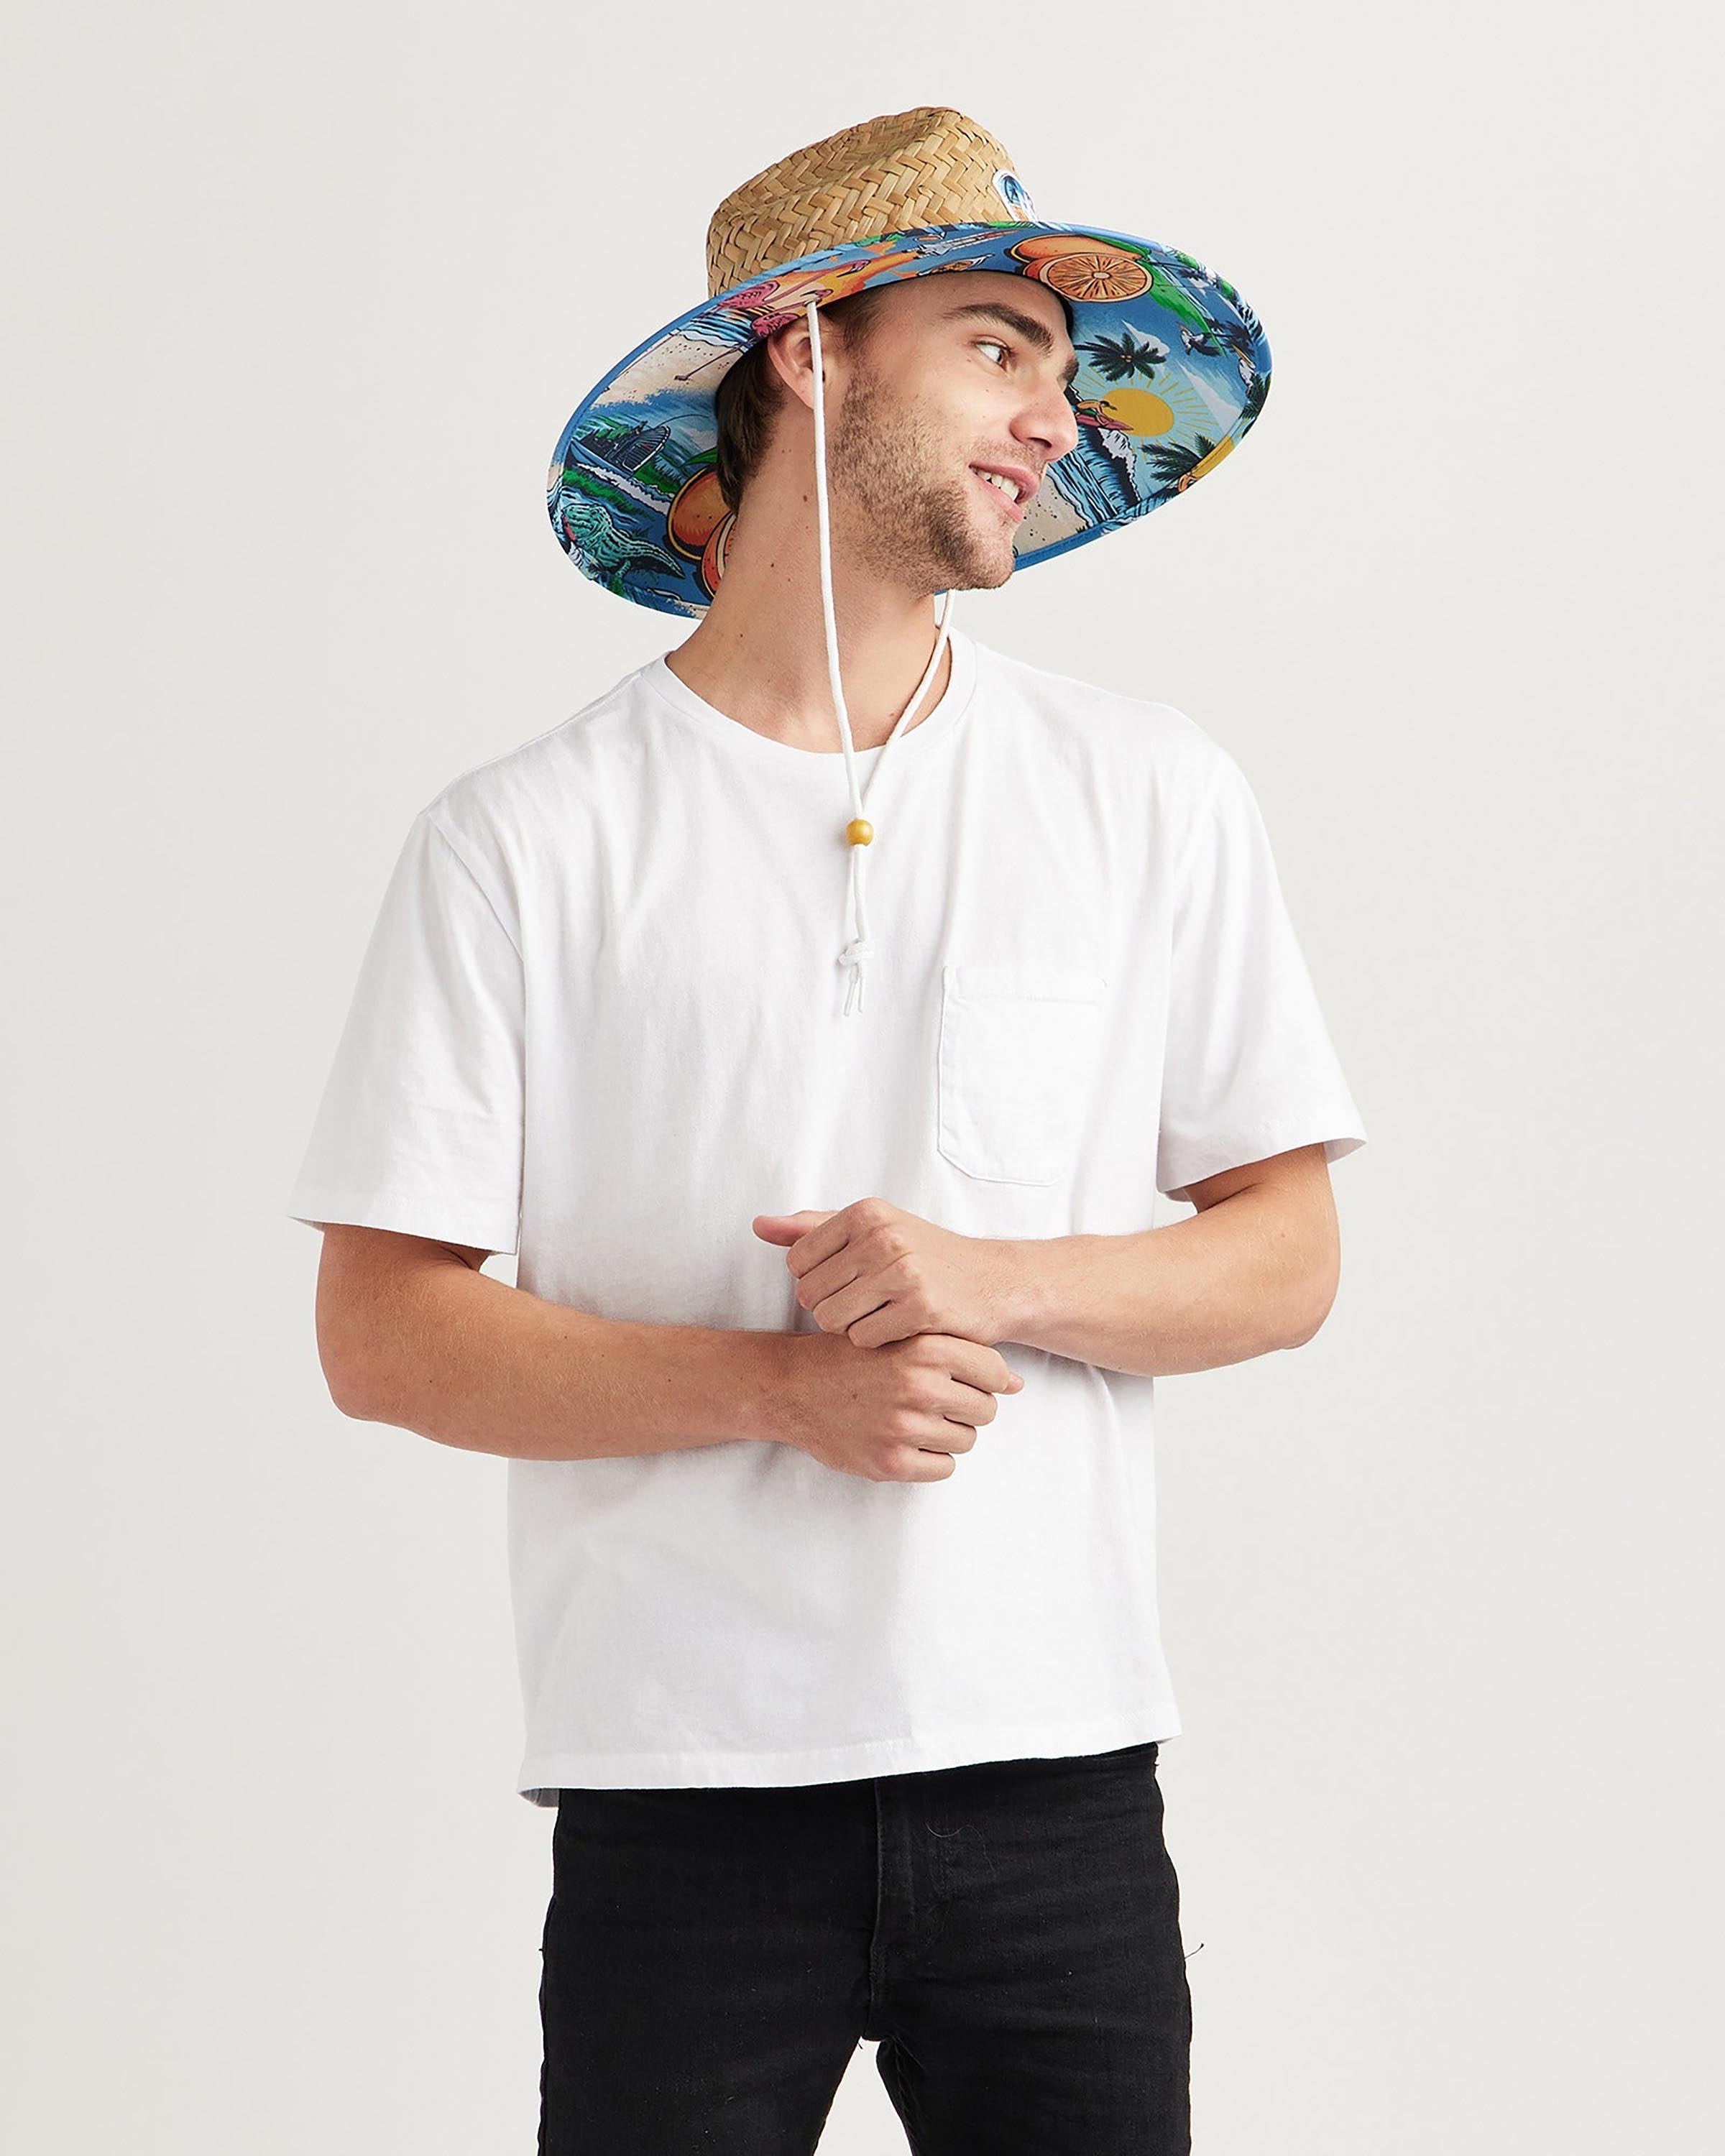 Hemlock male model looking right wearing Seaside straw lifeguard hat with beachside pattern